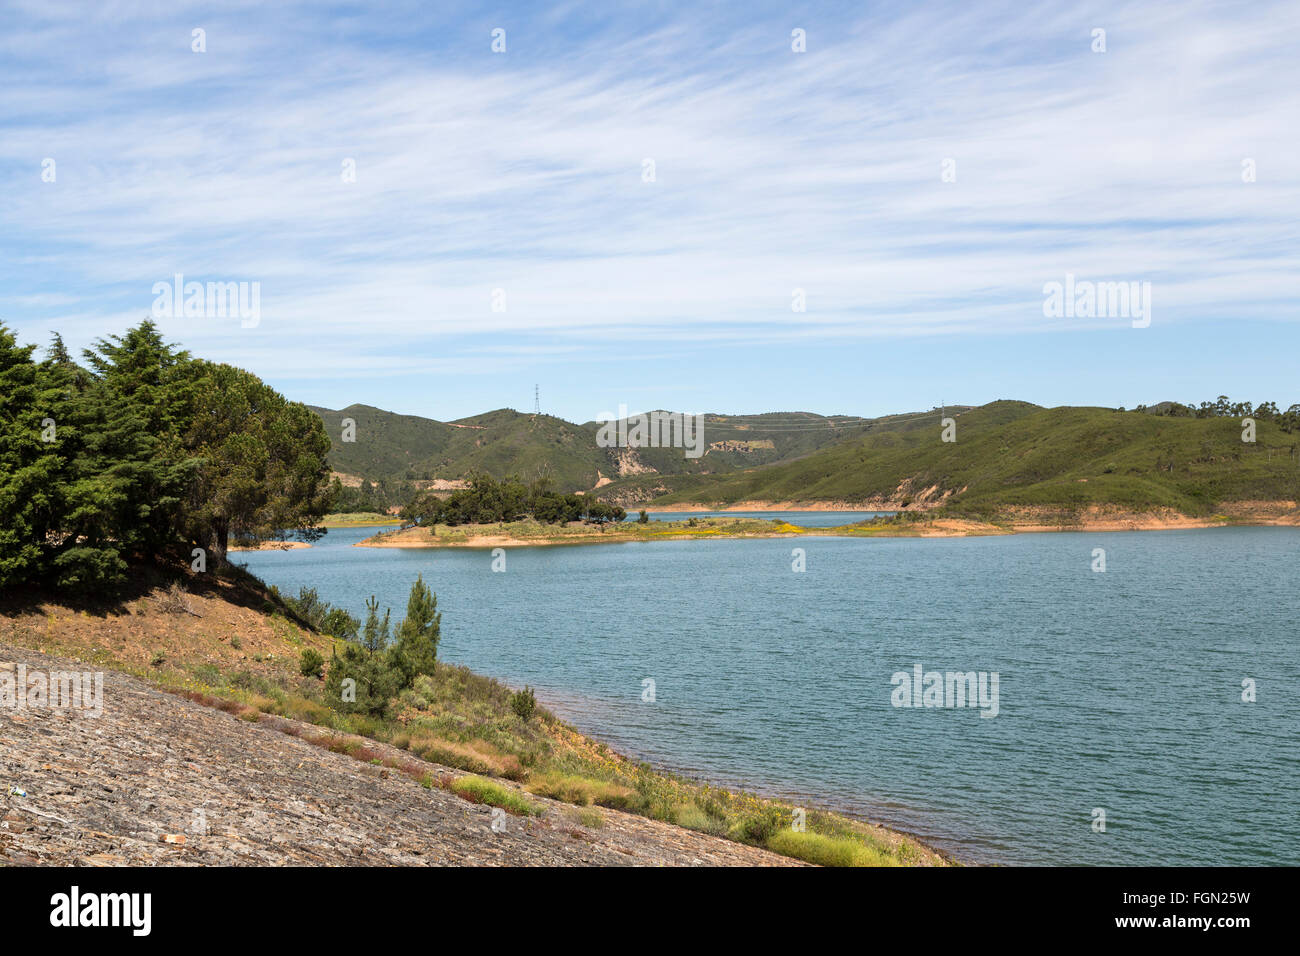 Barragem do Arade, Arade dam and reservoir, Algarve, Portugal Stock Photo